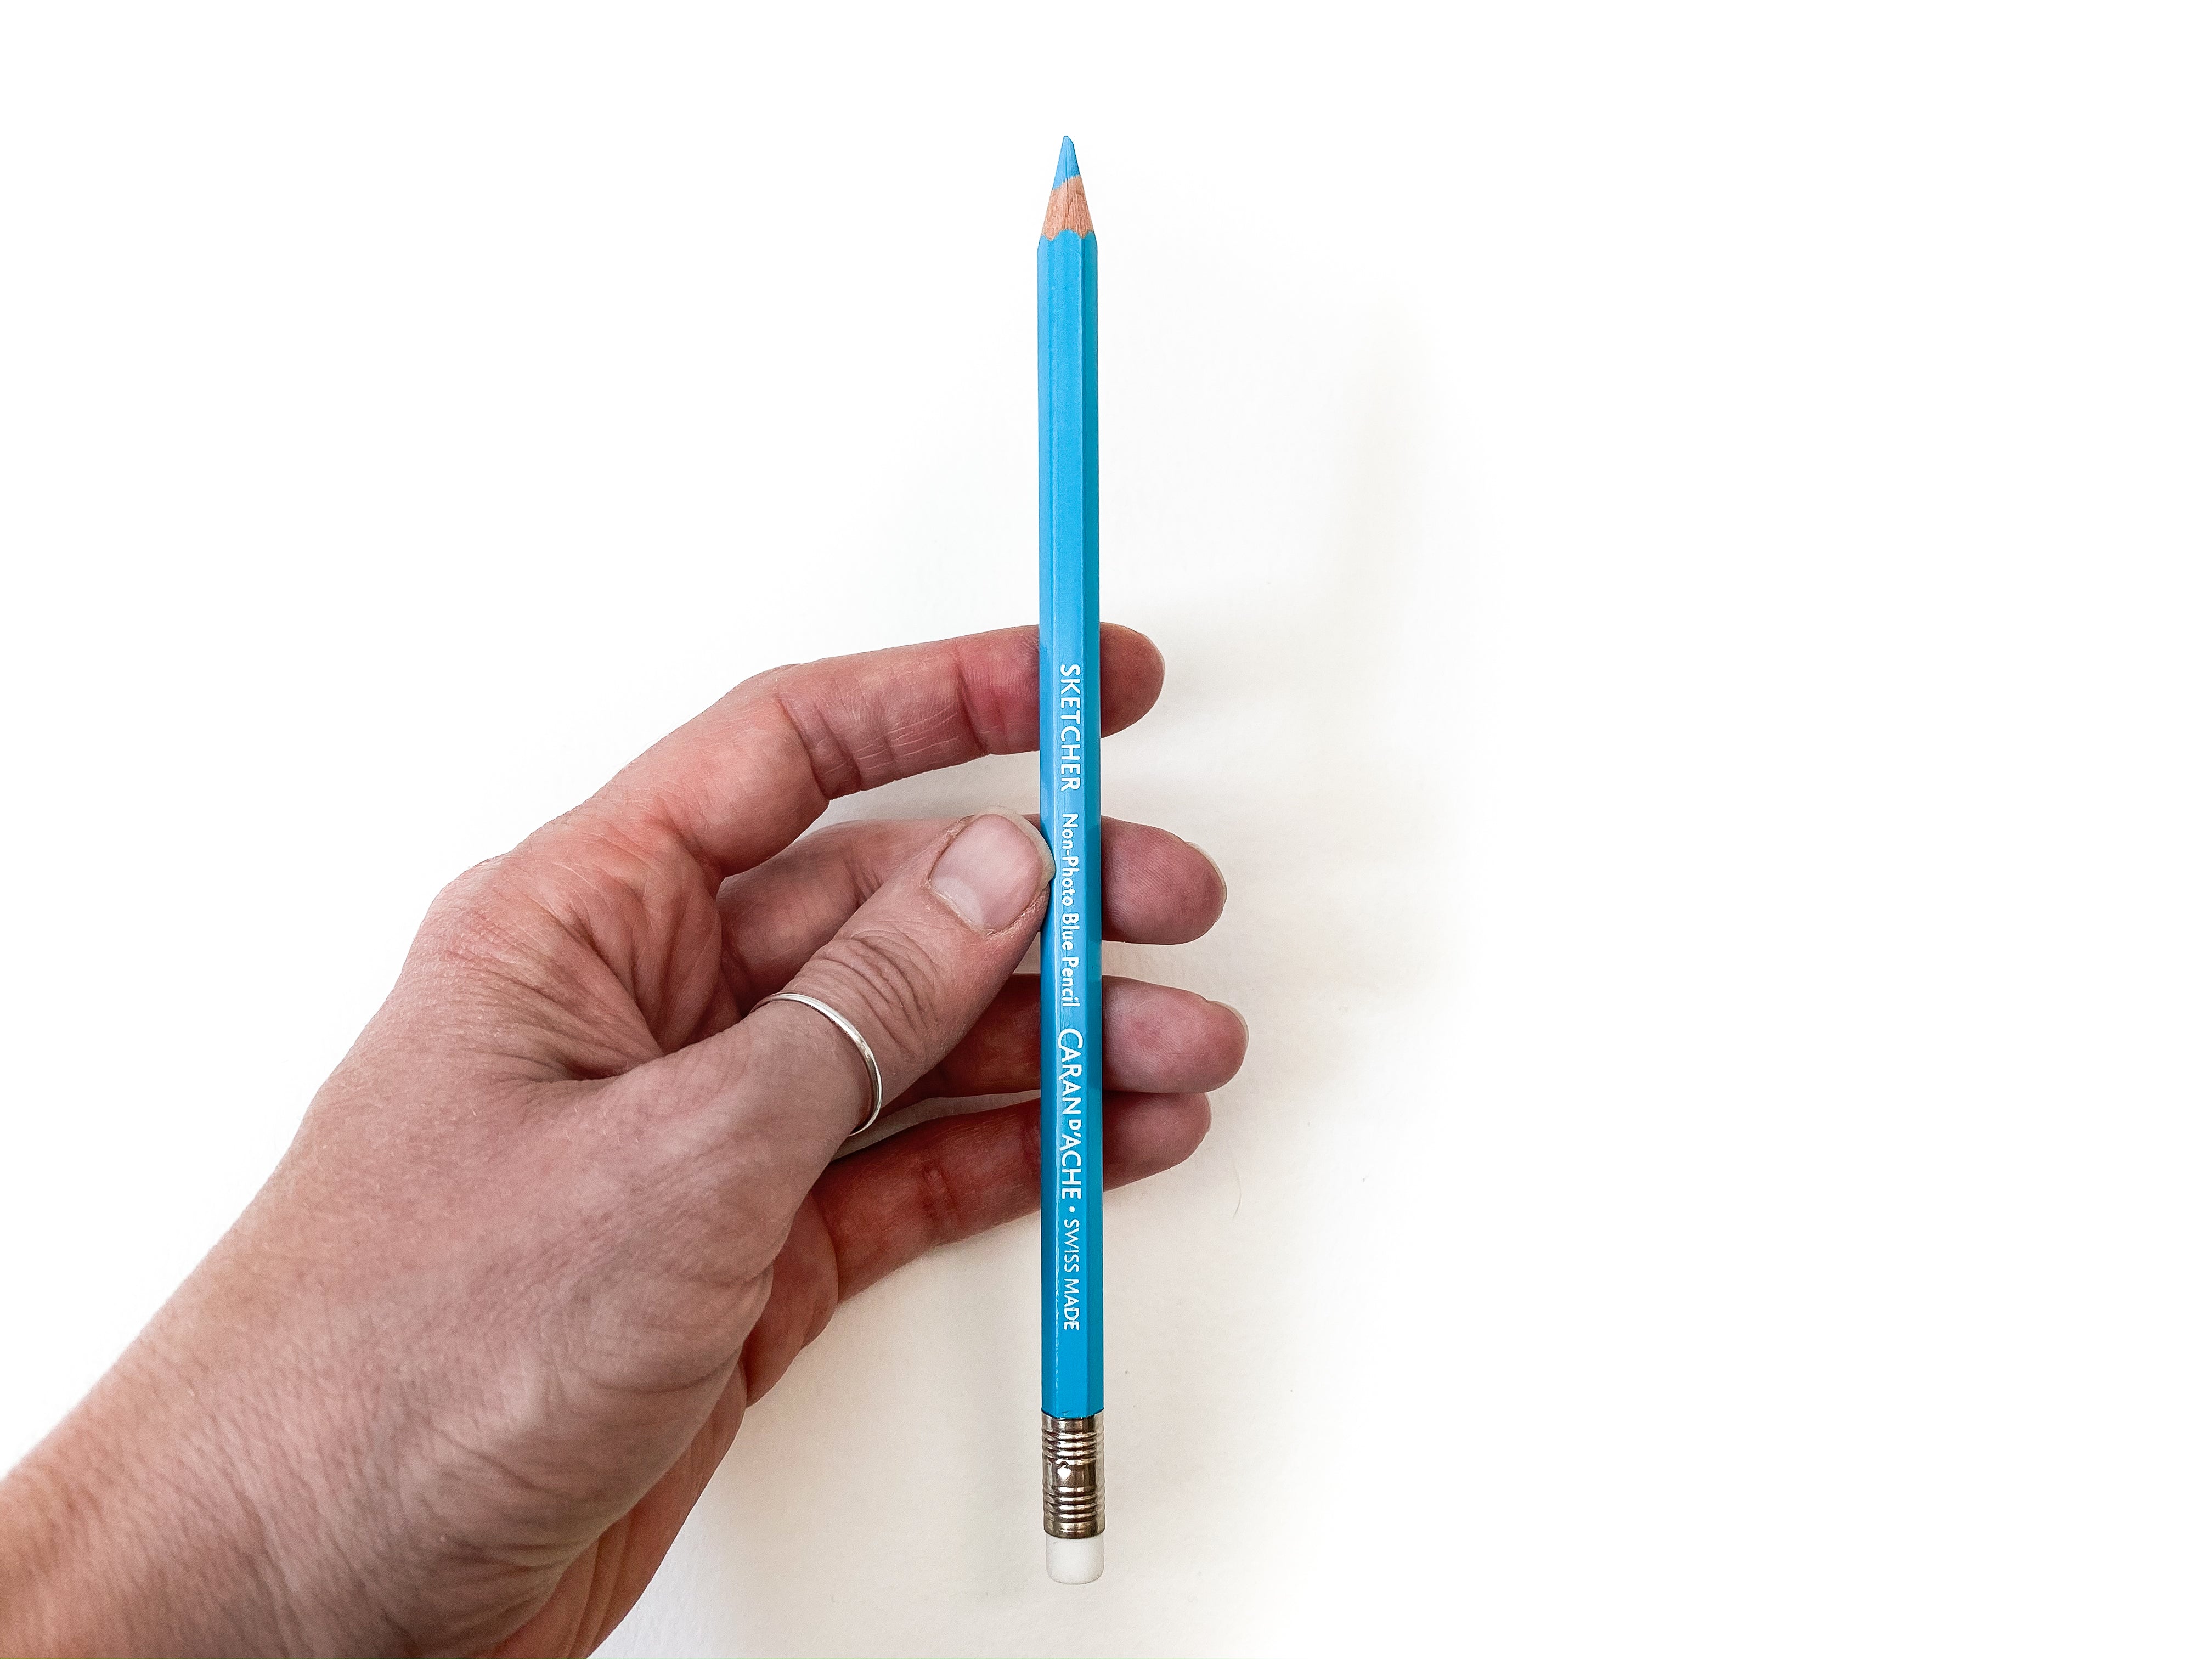 Bút chì màu xanh da trời - Greenleaf & Blueberry: Màu xanh da trời của bút chì Greenleaf & Blueberry sẽ làm cho những tác phẩm nghệ thuật của bạn thêm phần nổi bật và độc đáo. Với độ bền màu cao, bạn hoàn toàn yên tâm khi sử dụng sản phẩm này để tô màu cho các bức tranh, sketchbook hay bất kỳ tác phẩm sáng tạo nào của mình.